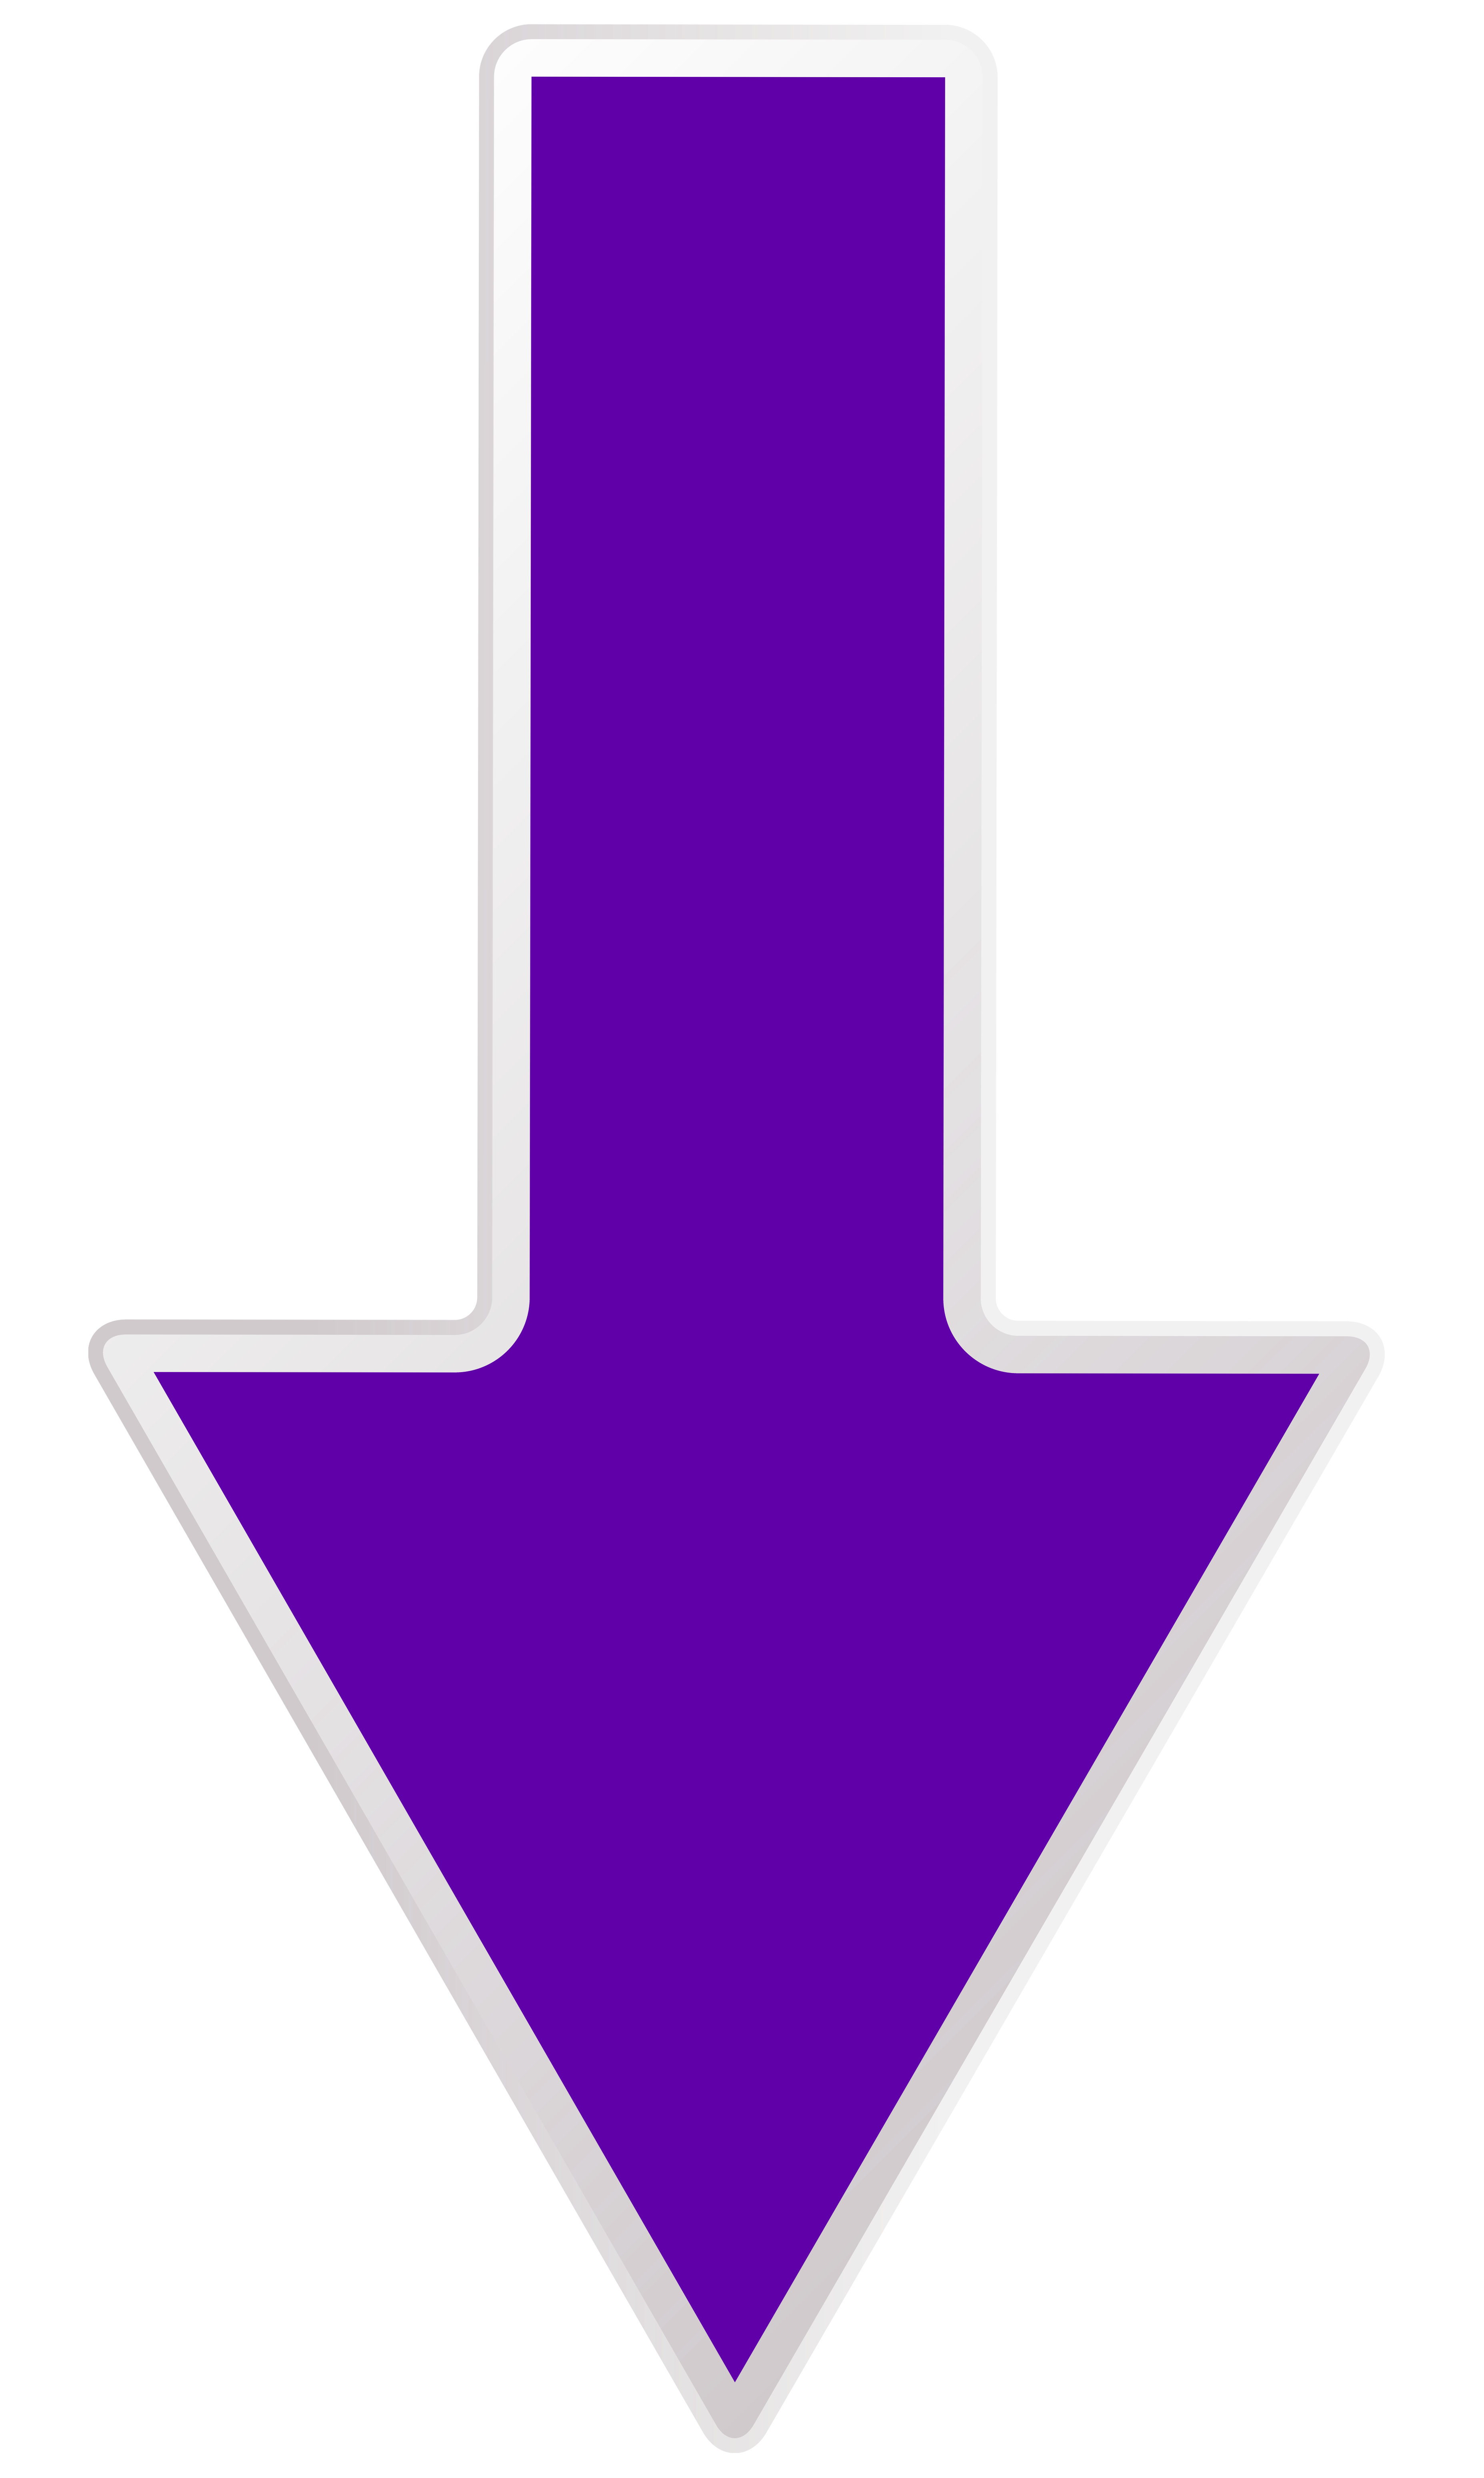 Arrow Purple Down Transparent PNG Clip Art Image